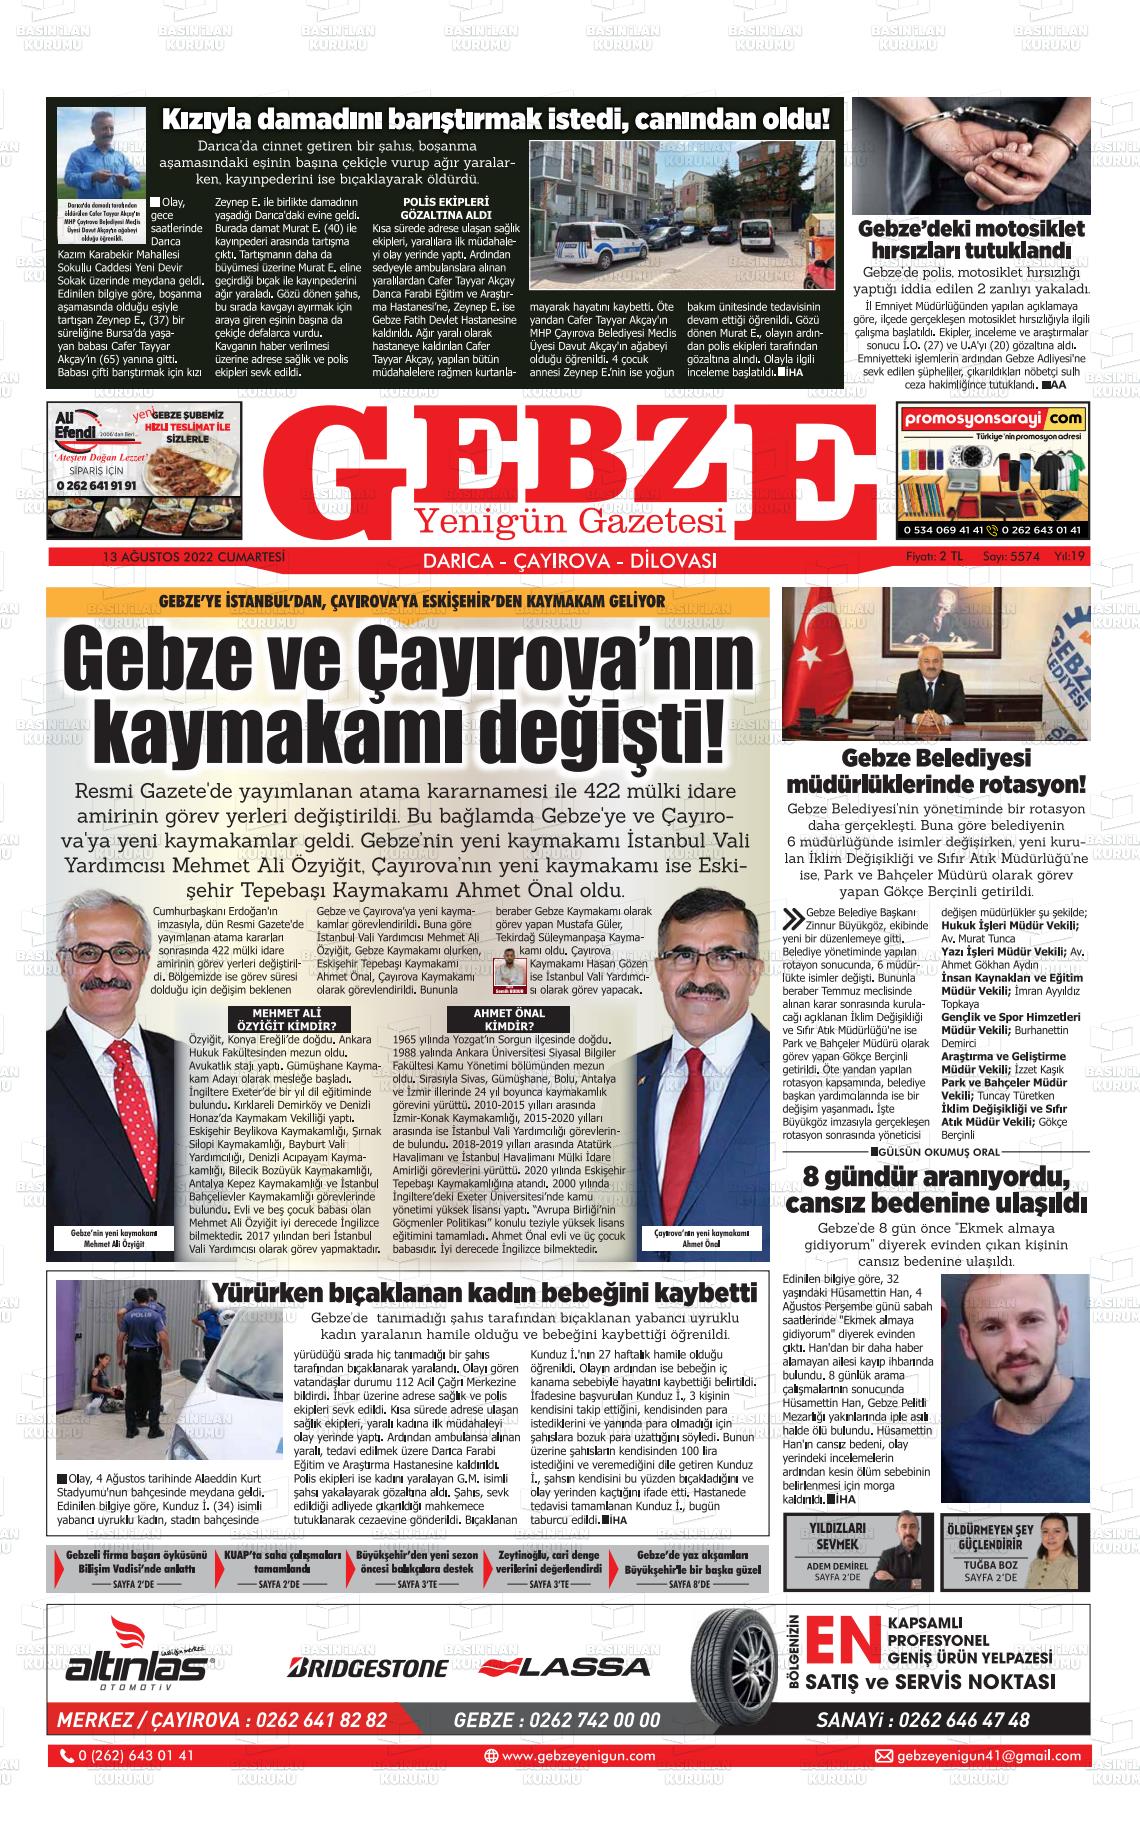 13 Ağustos 2022 Gebze Yenigün Gazete Manşeti